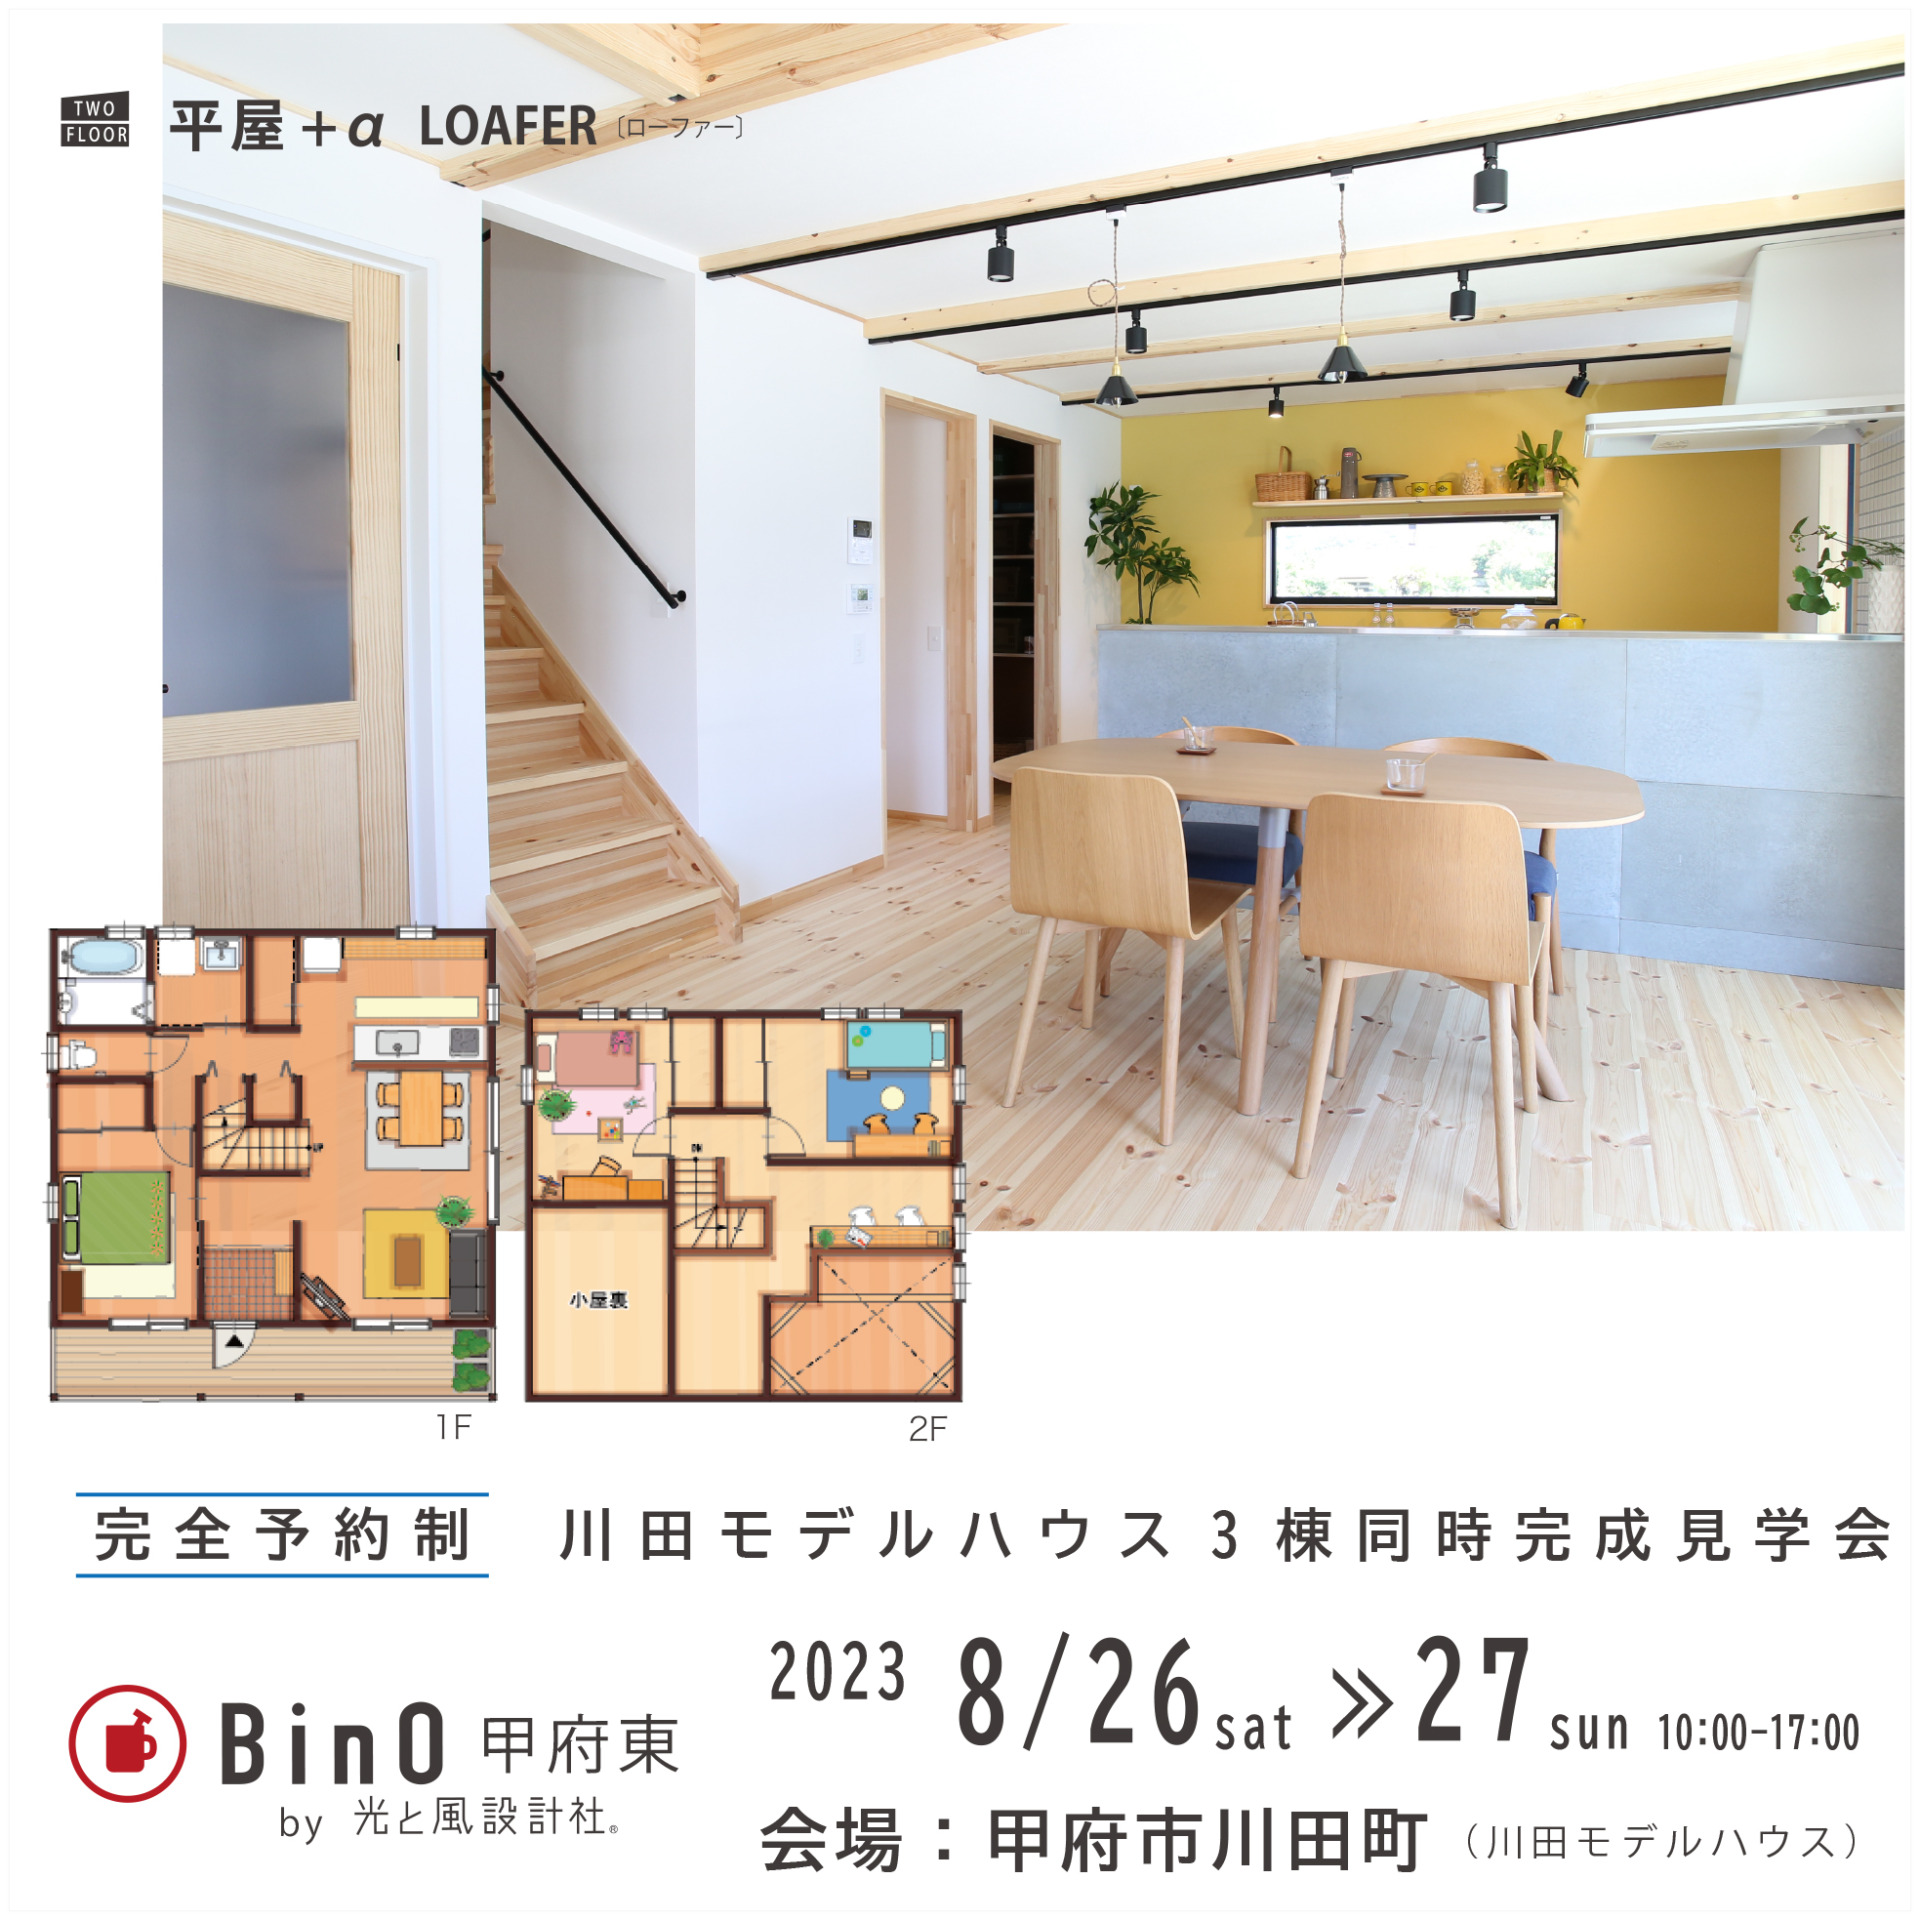 EVENT】川田モデルハウス3棟同時「完成見学会」を開催いたします。《完全予約制》 | BinO | 山梨の注文住宅なら光と風設計社